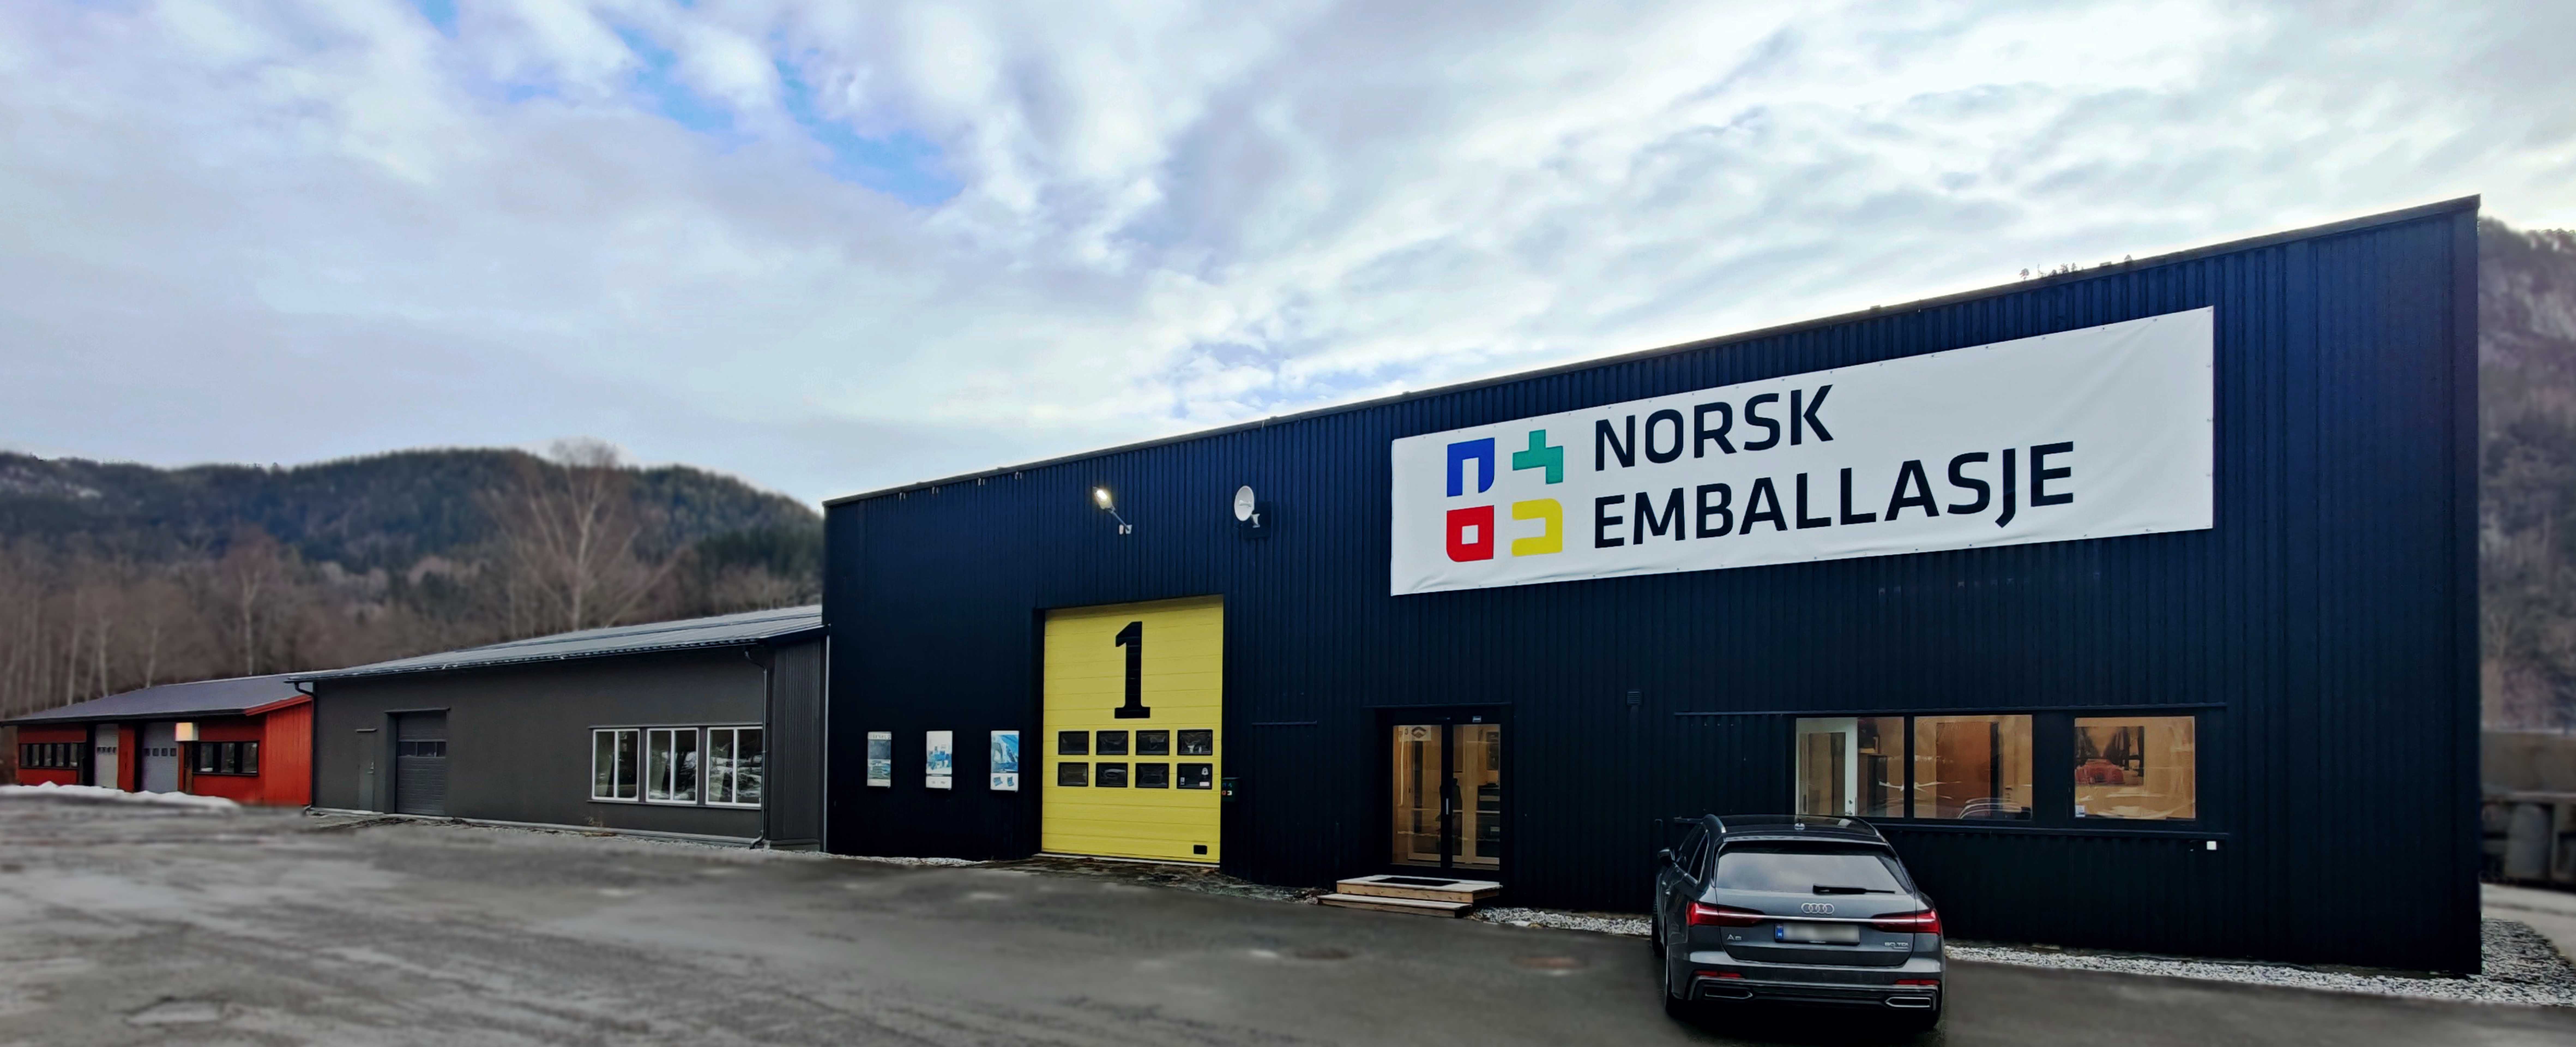 Norsk Emballasje fasade